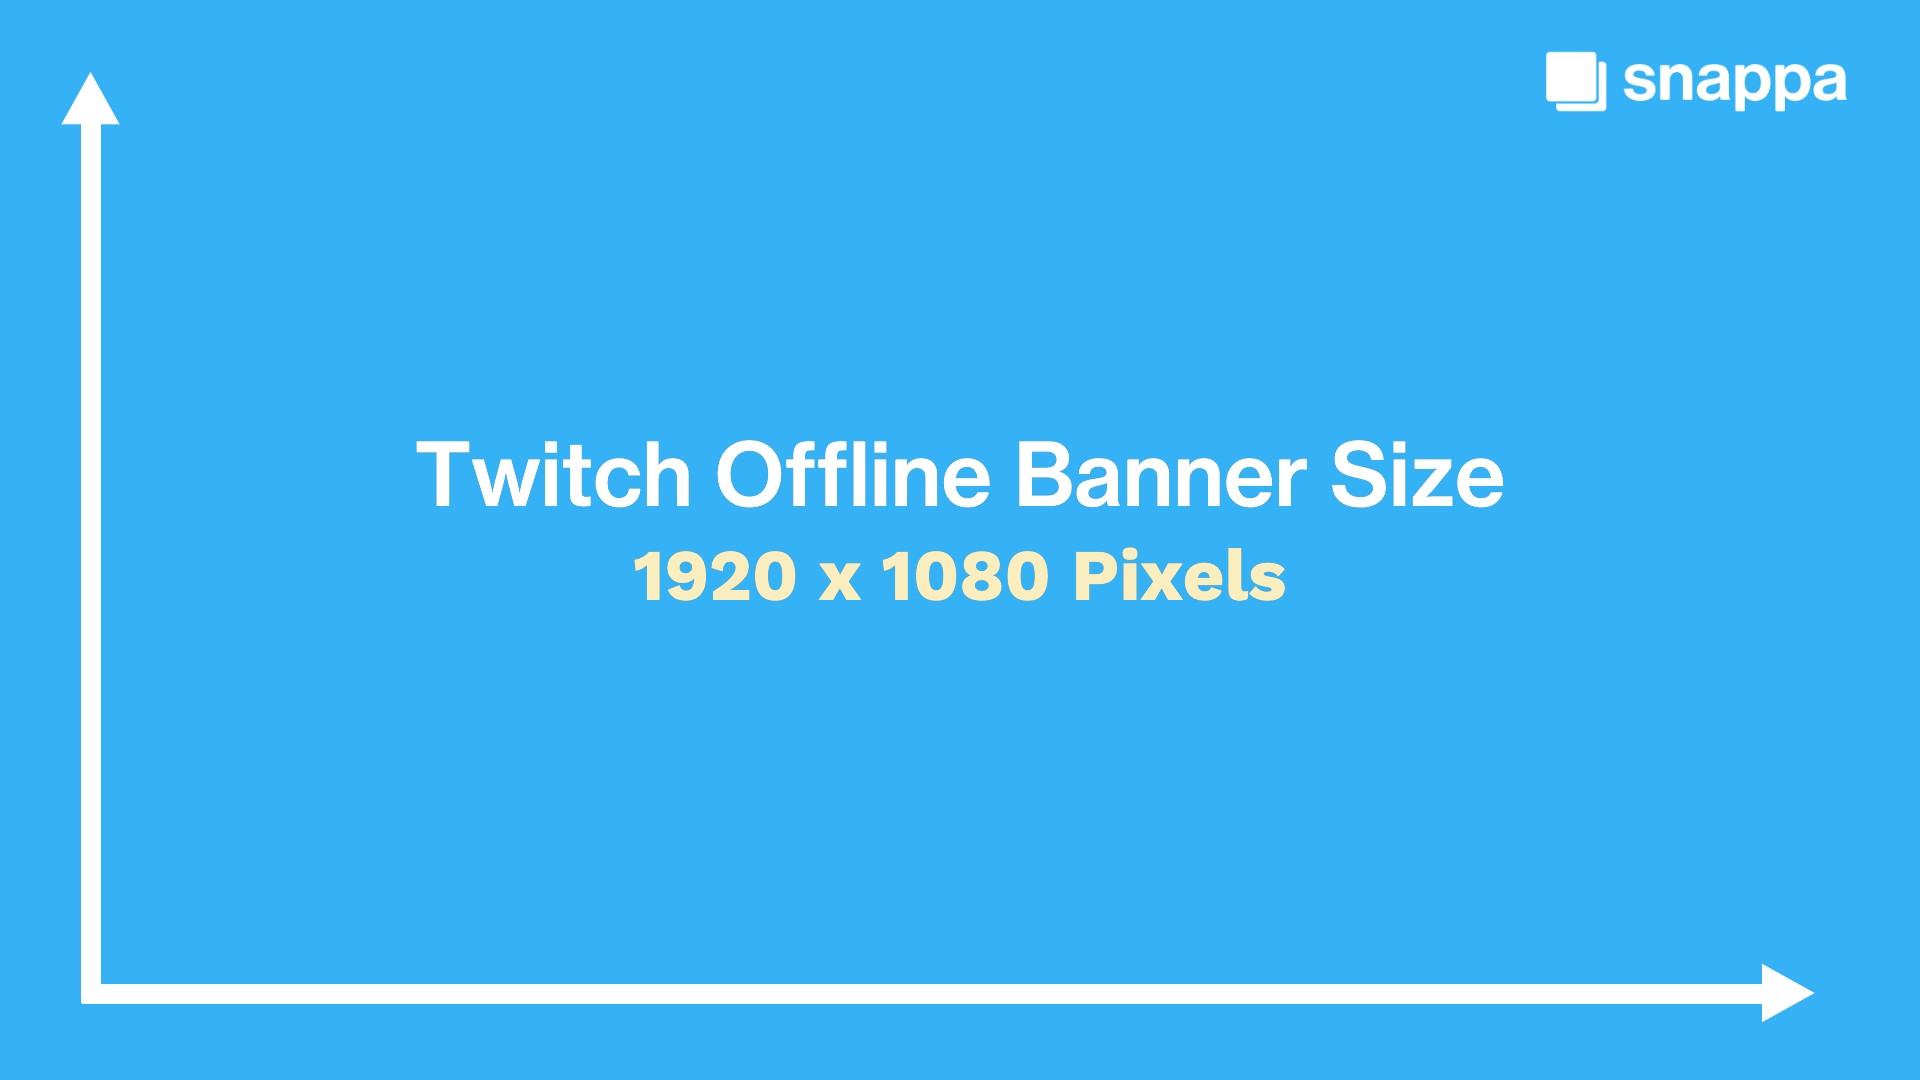 Twitch offline banner templates